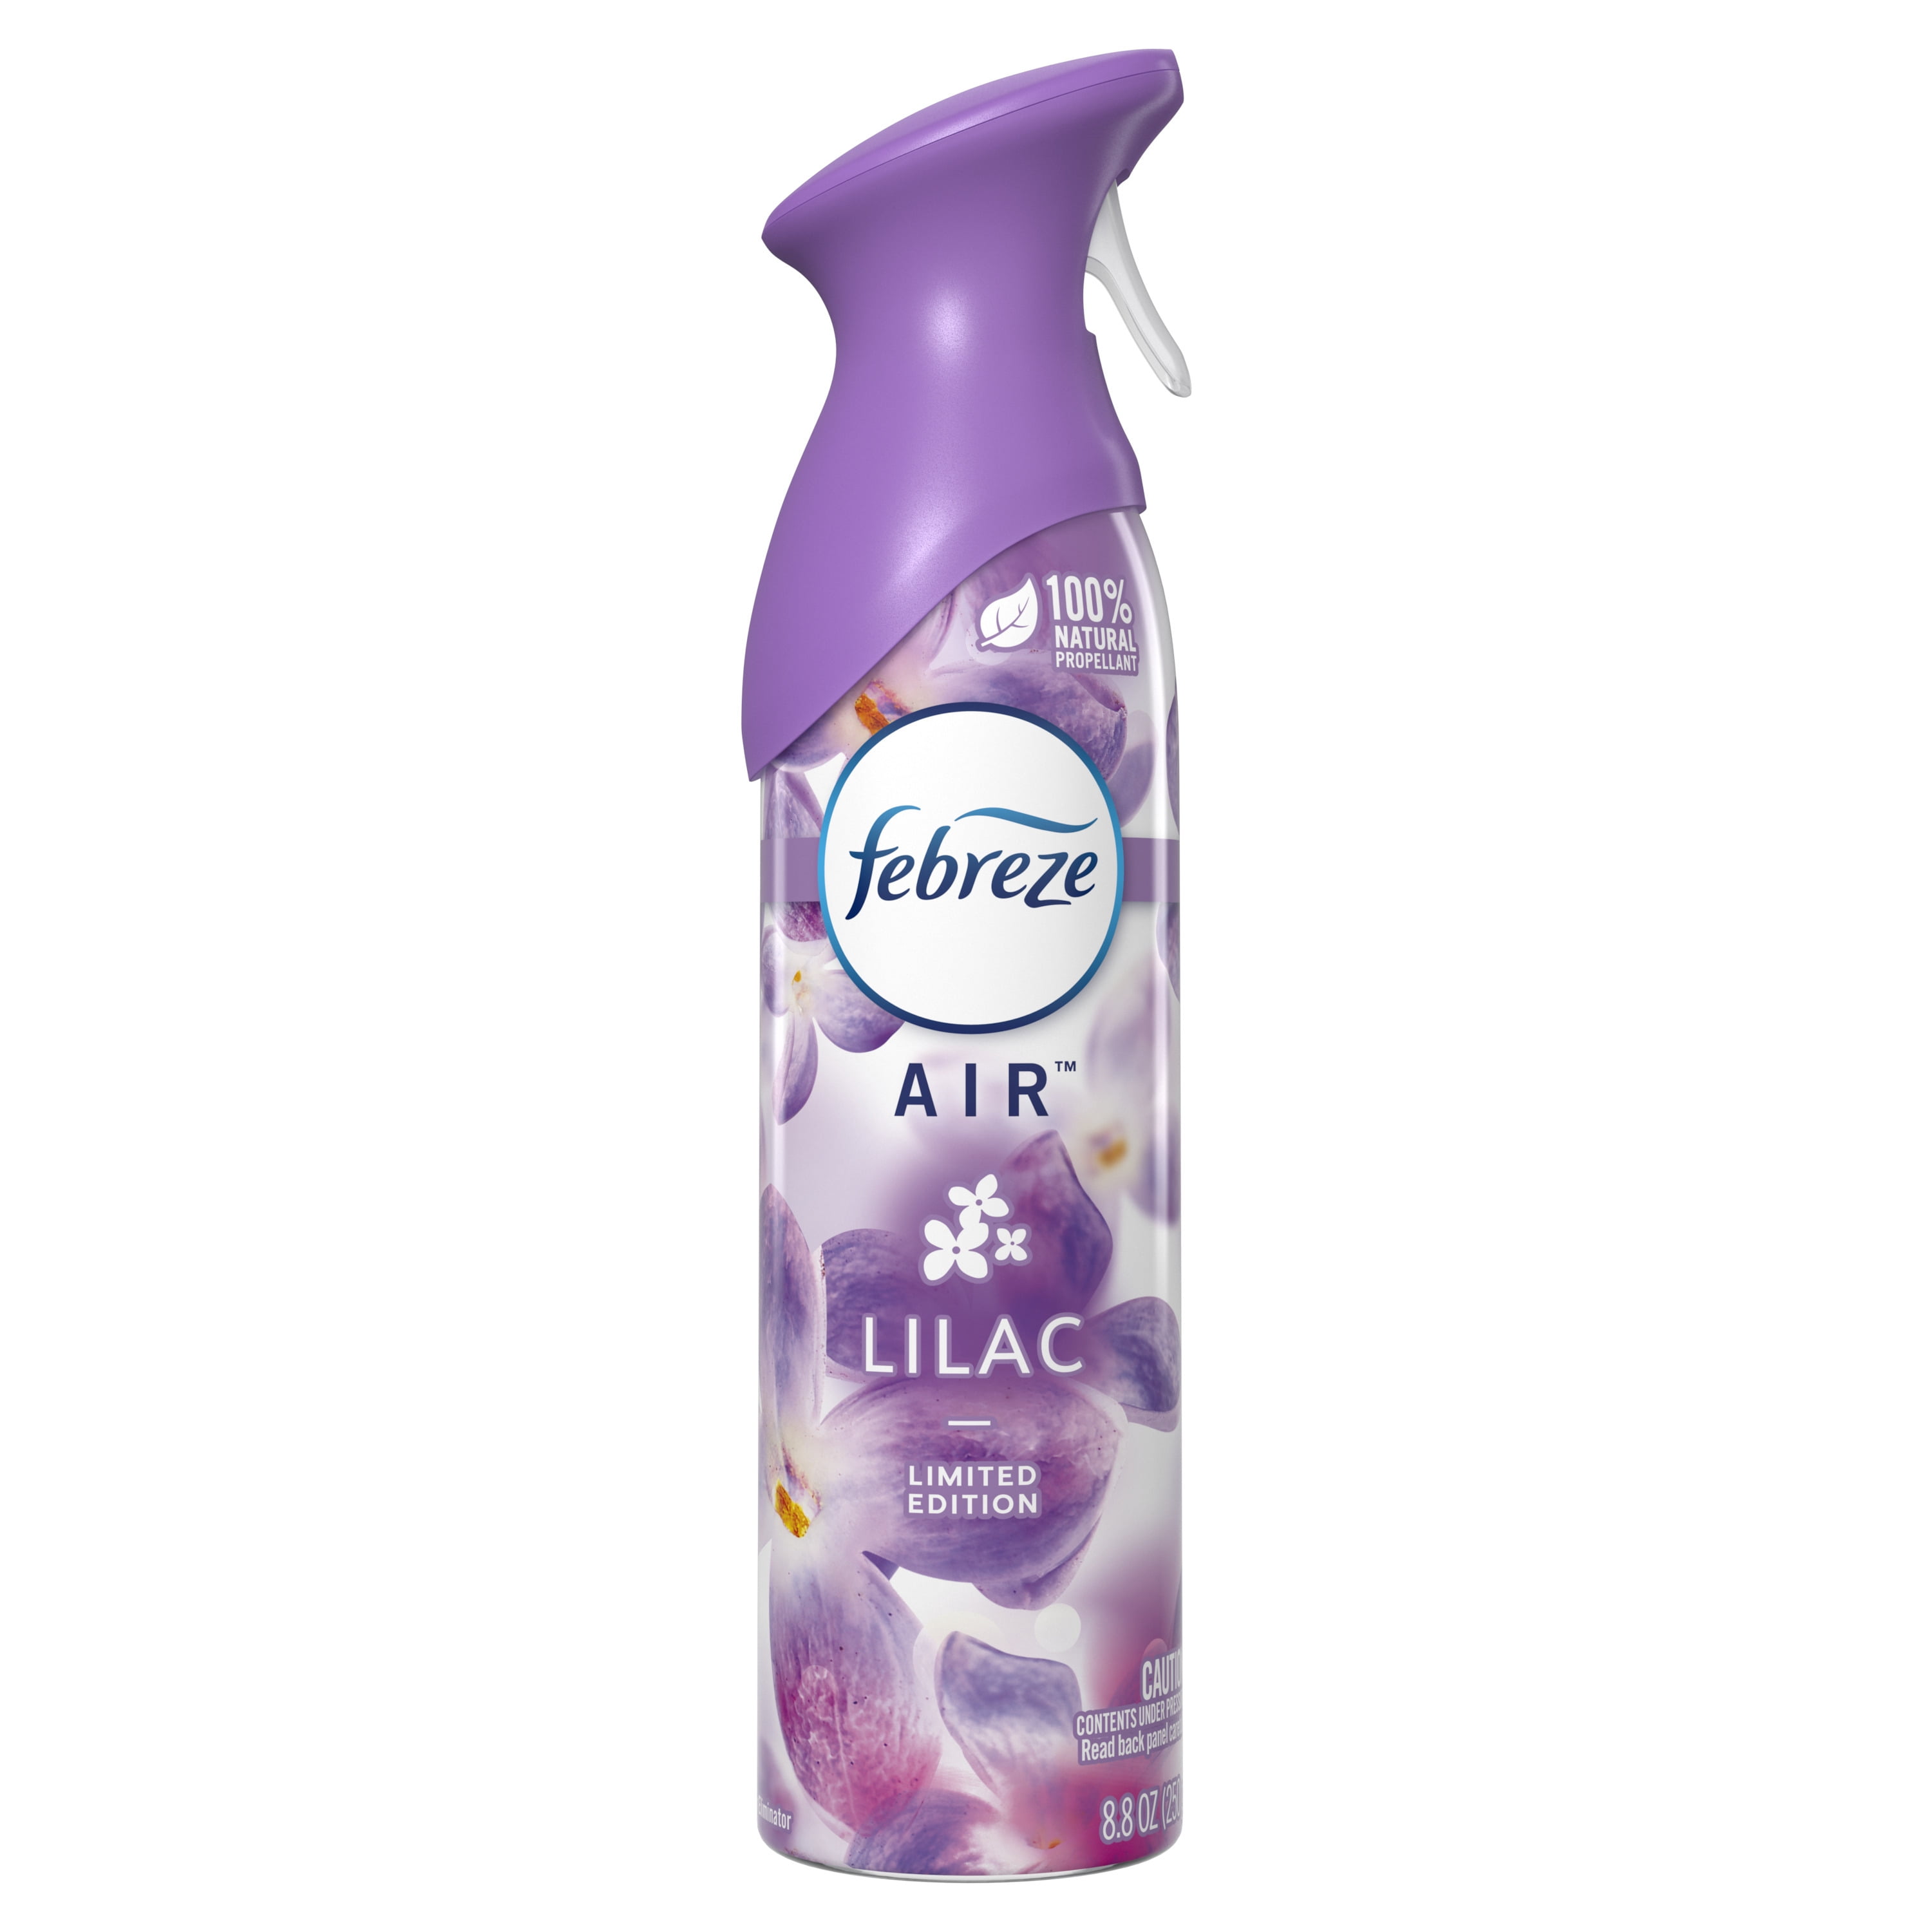 Febreze Air Effects Odor-Fighting Air Freshener Lilac, 8.8 oz. Aerosol Can  